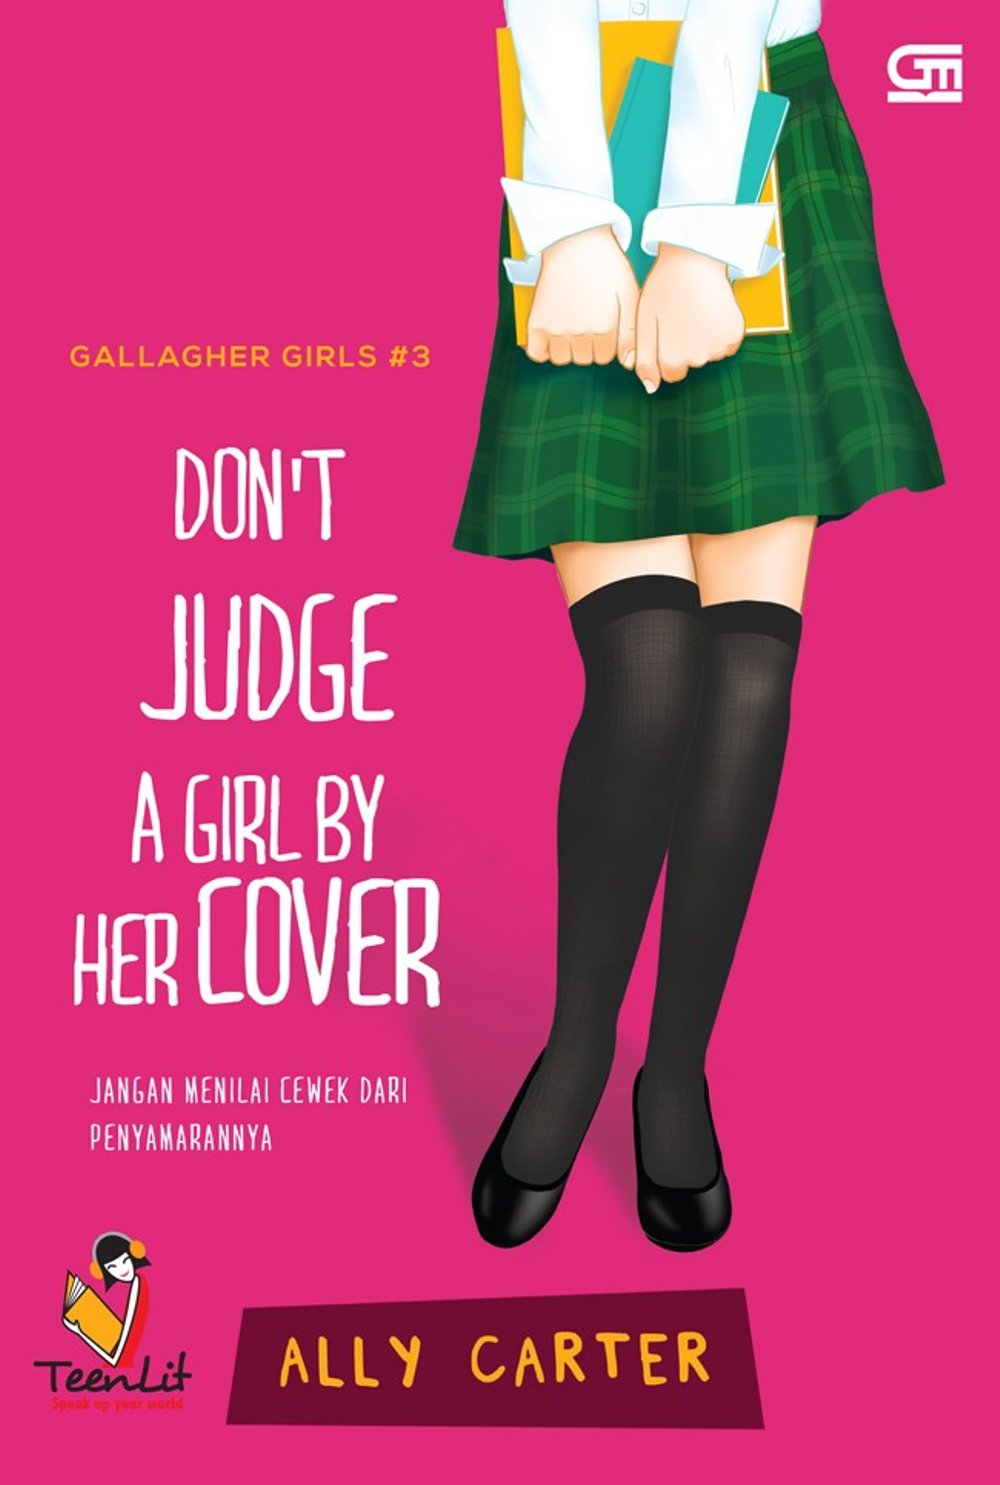 Don't Judge A Girl By Her Cover = Jangan Menilai Cewek Dari Penyamarannya